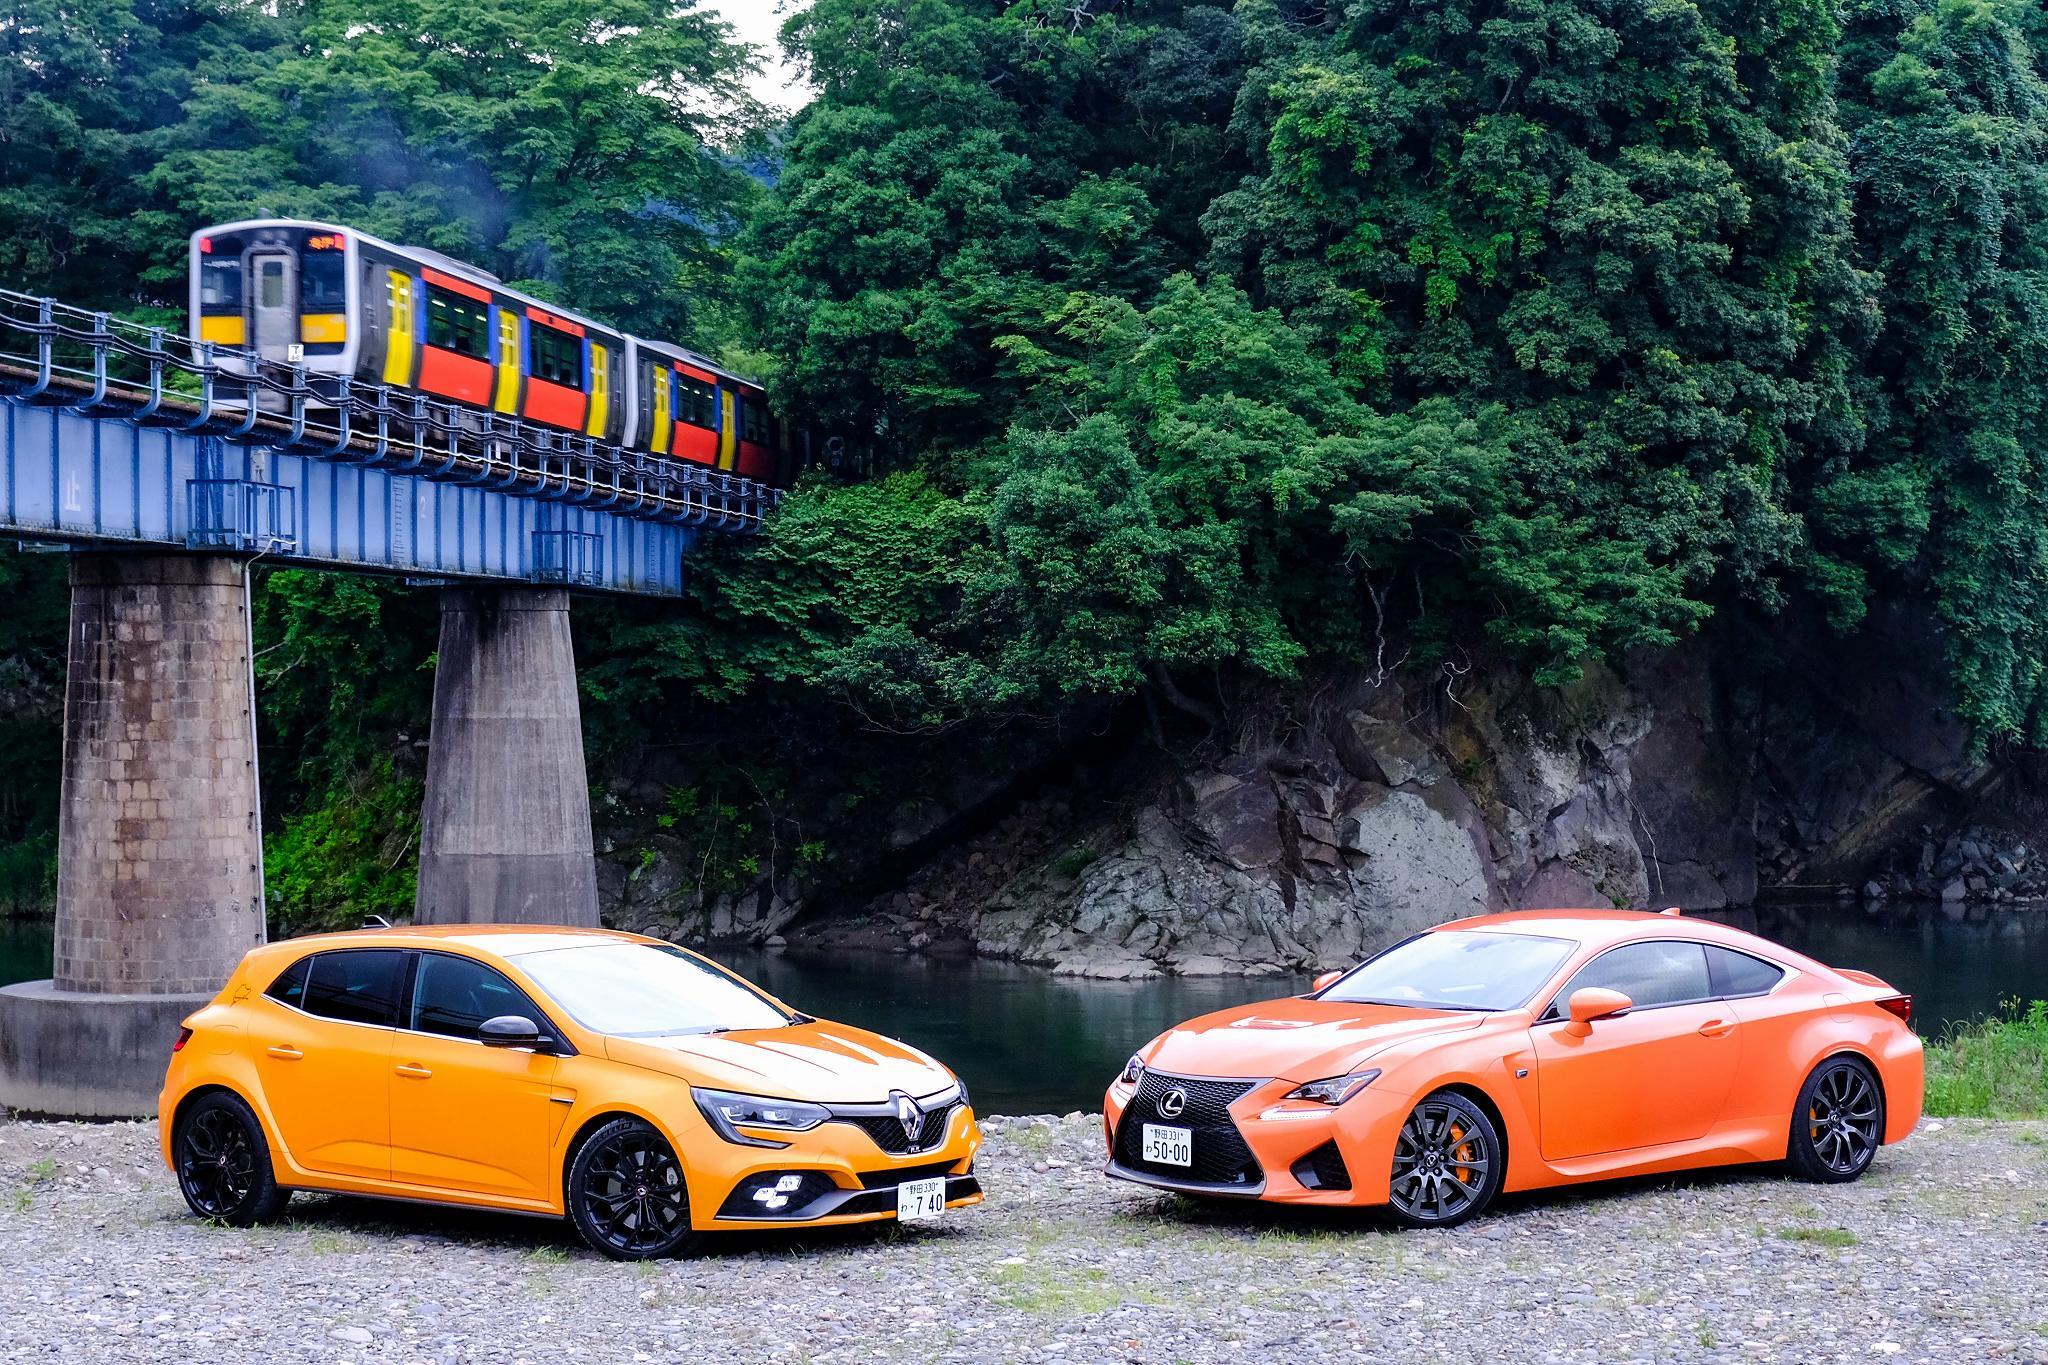 おもしろレンタカー 野田本店 が外車レンタカー 高級車 レンタカーのラインナップにオレンジ色のスポーツカー メガーヌrsとレクサスrc Fを導入 株式会社はなぐるまのプレスリリース